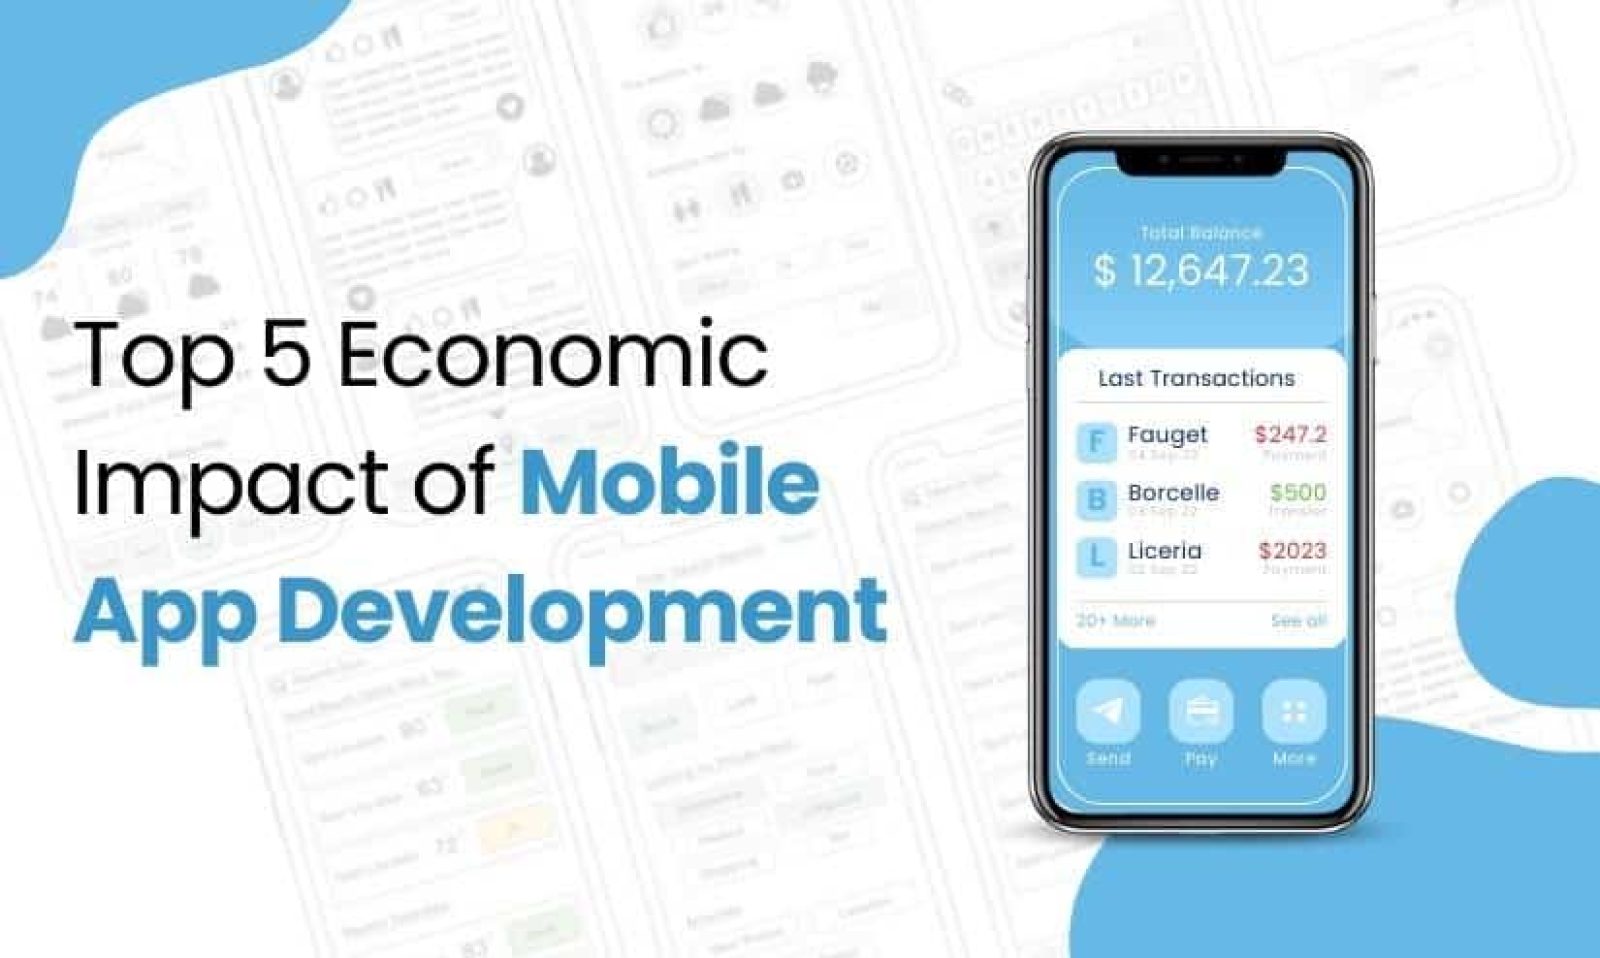 Top 5 Economic Impact of Mobile App Development